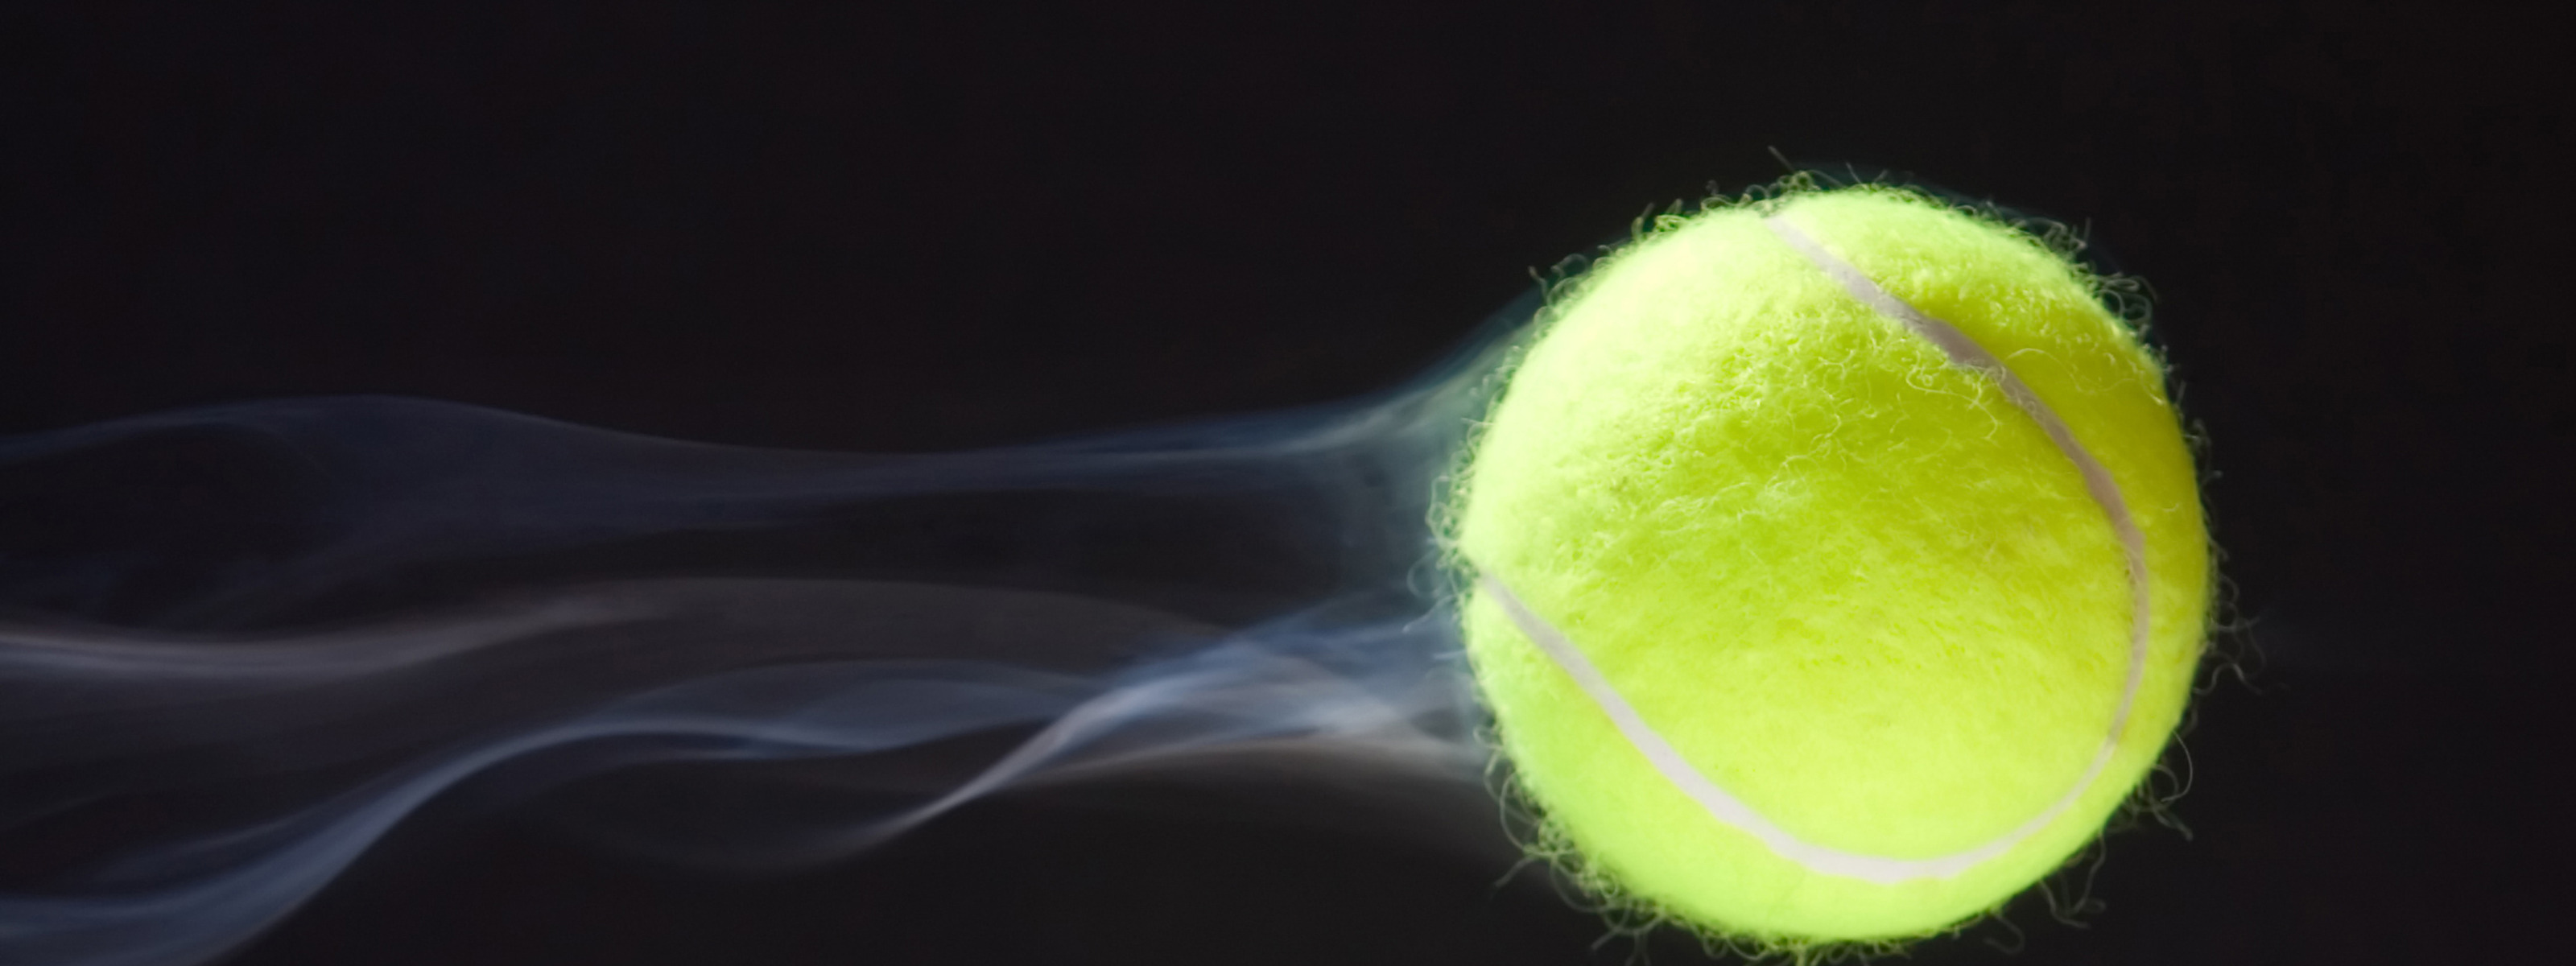 Представьте ядро размером с теннисный мячик. Текстура теннисного мяча. Теннисный мяч летит. Мячик для тенниса. Ntrcnehf ntytcyjuuj VTXF.